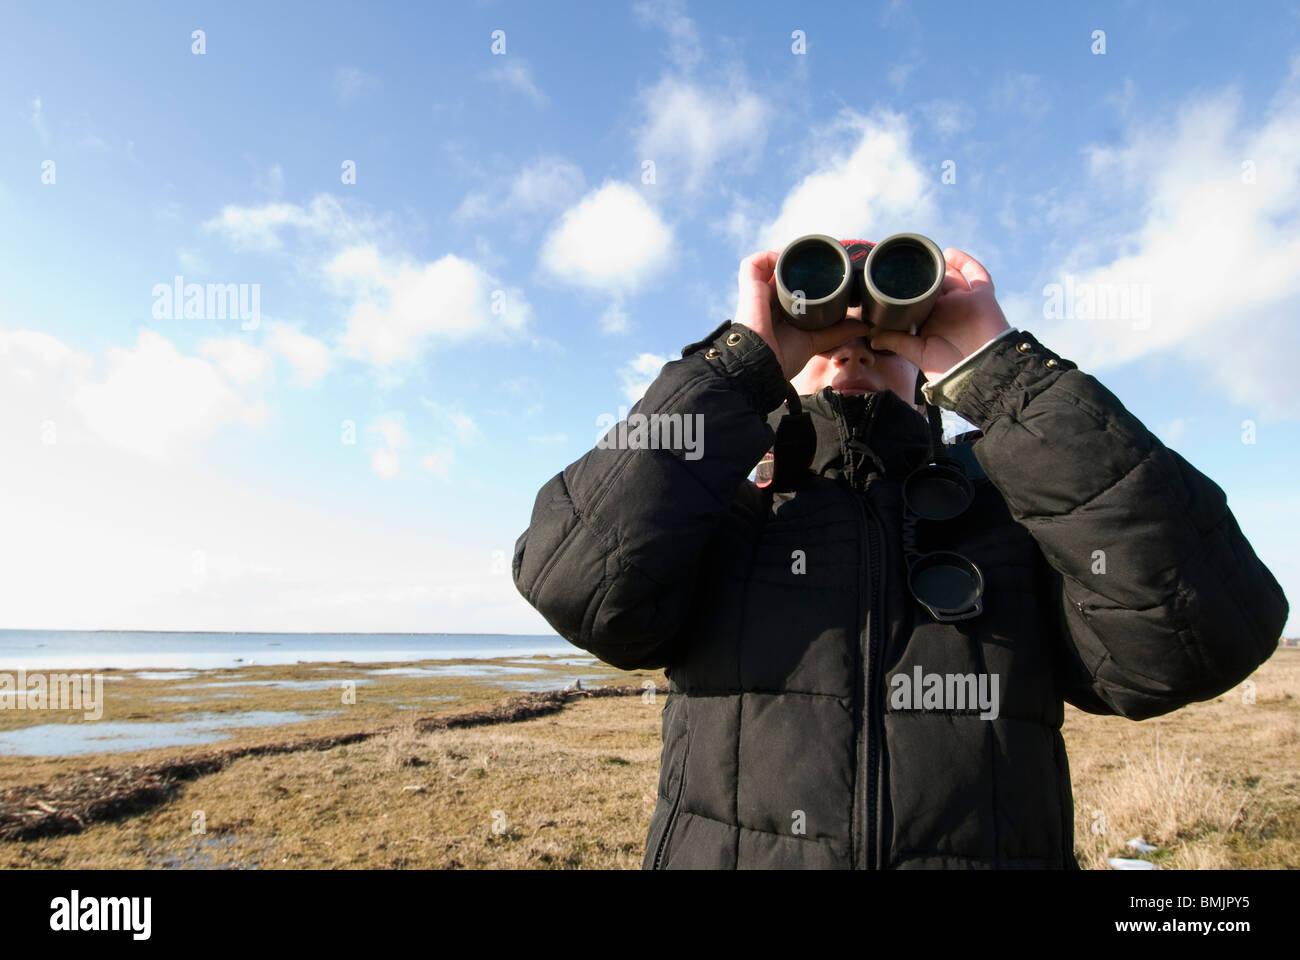 Escandinavia, Suecia Öland, Chica (8-9) mirando a través de binoculares Foto de stock